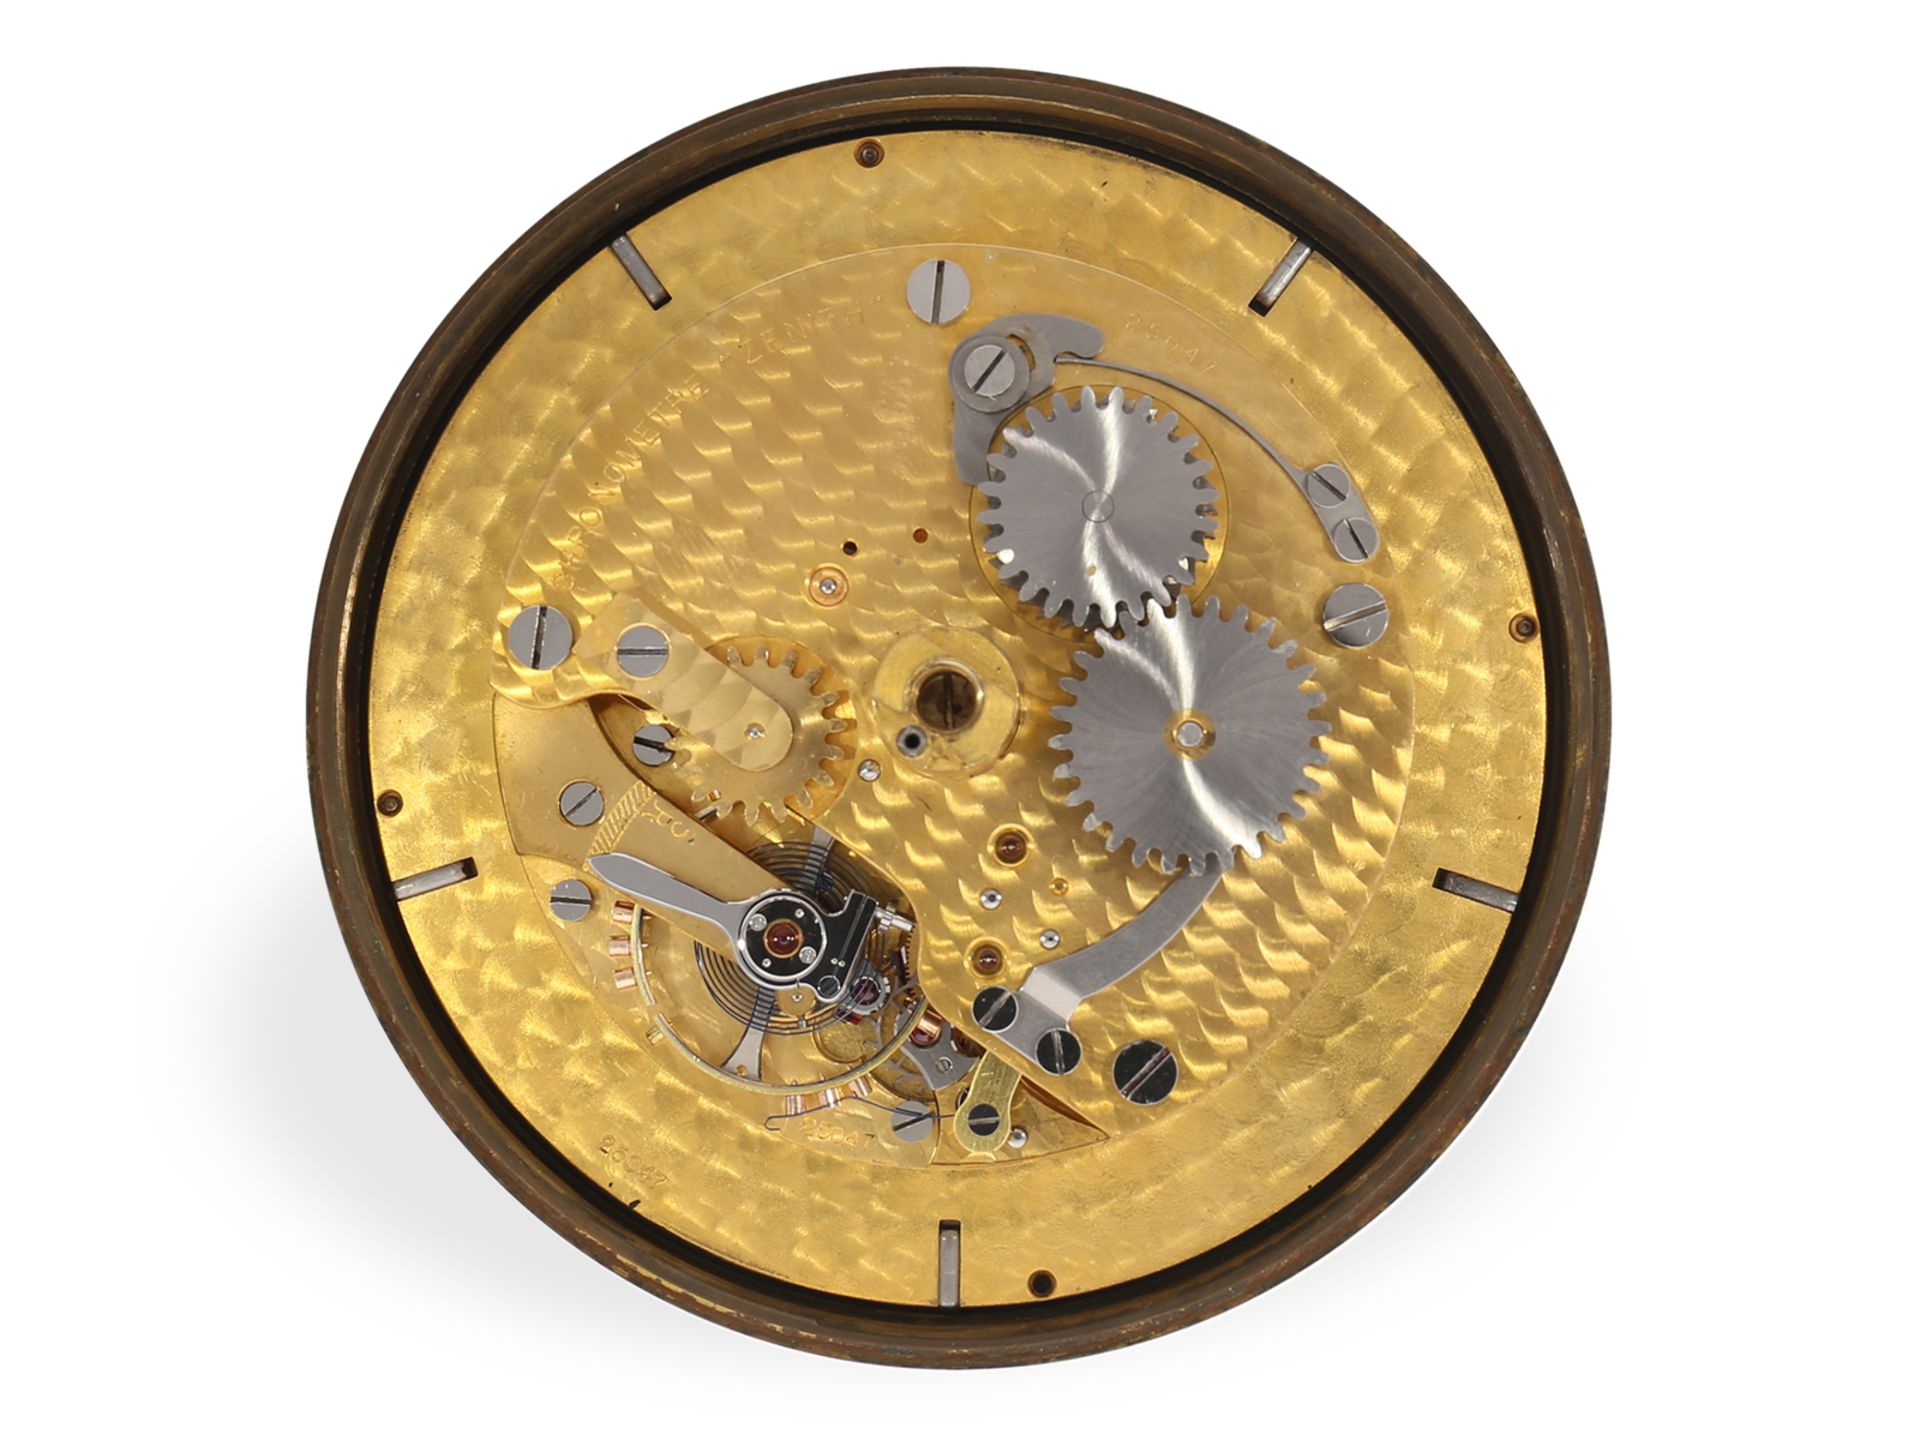 Hervorragend erhaltenes Zenith Marinechronometer, 30er Jahre - Bild 6 aus 7